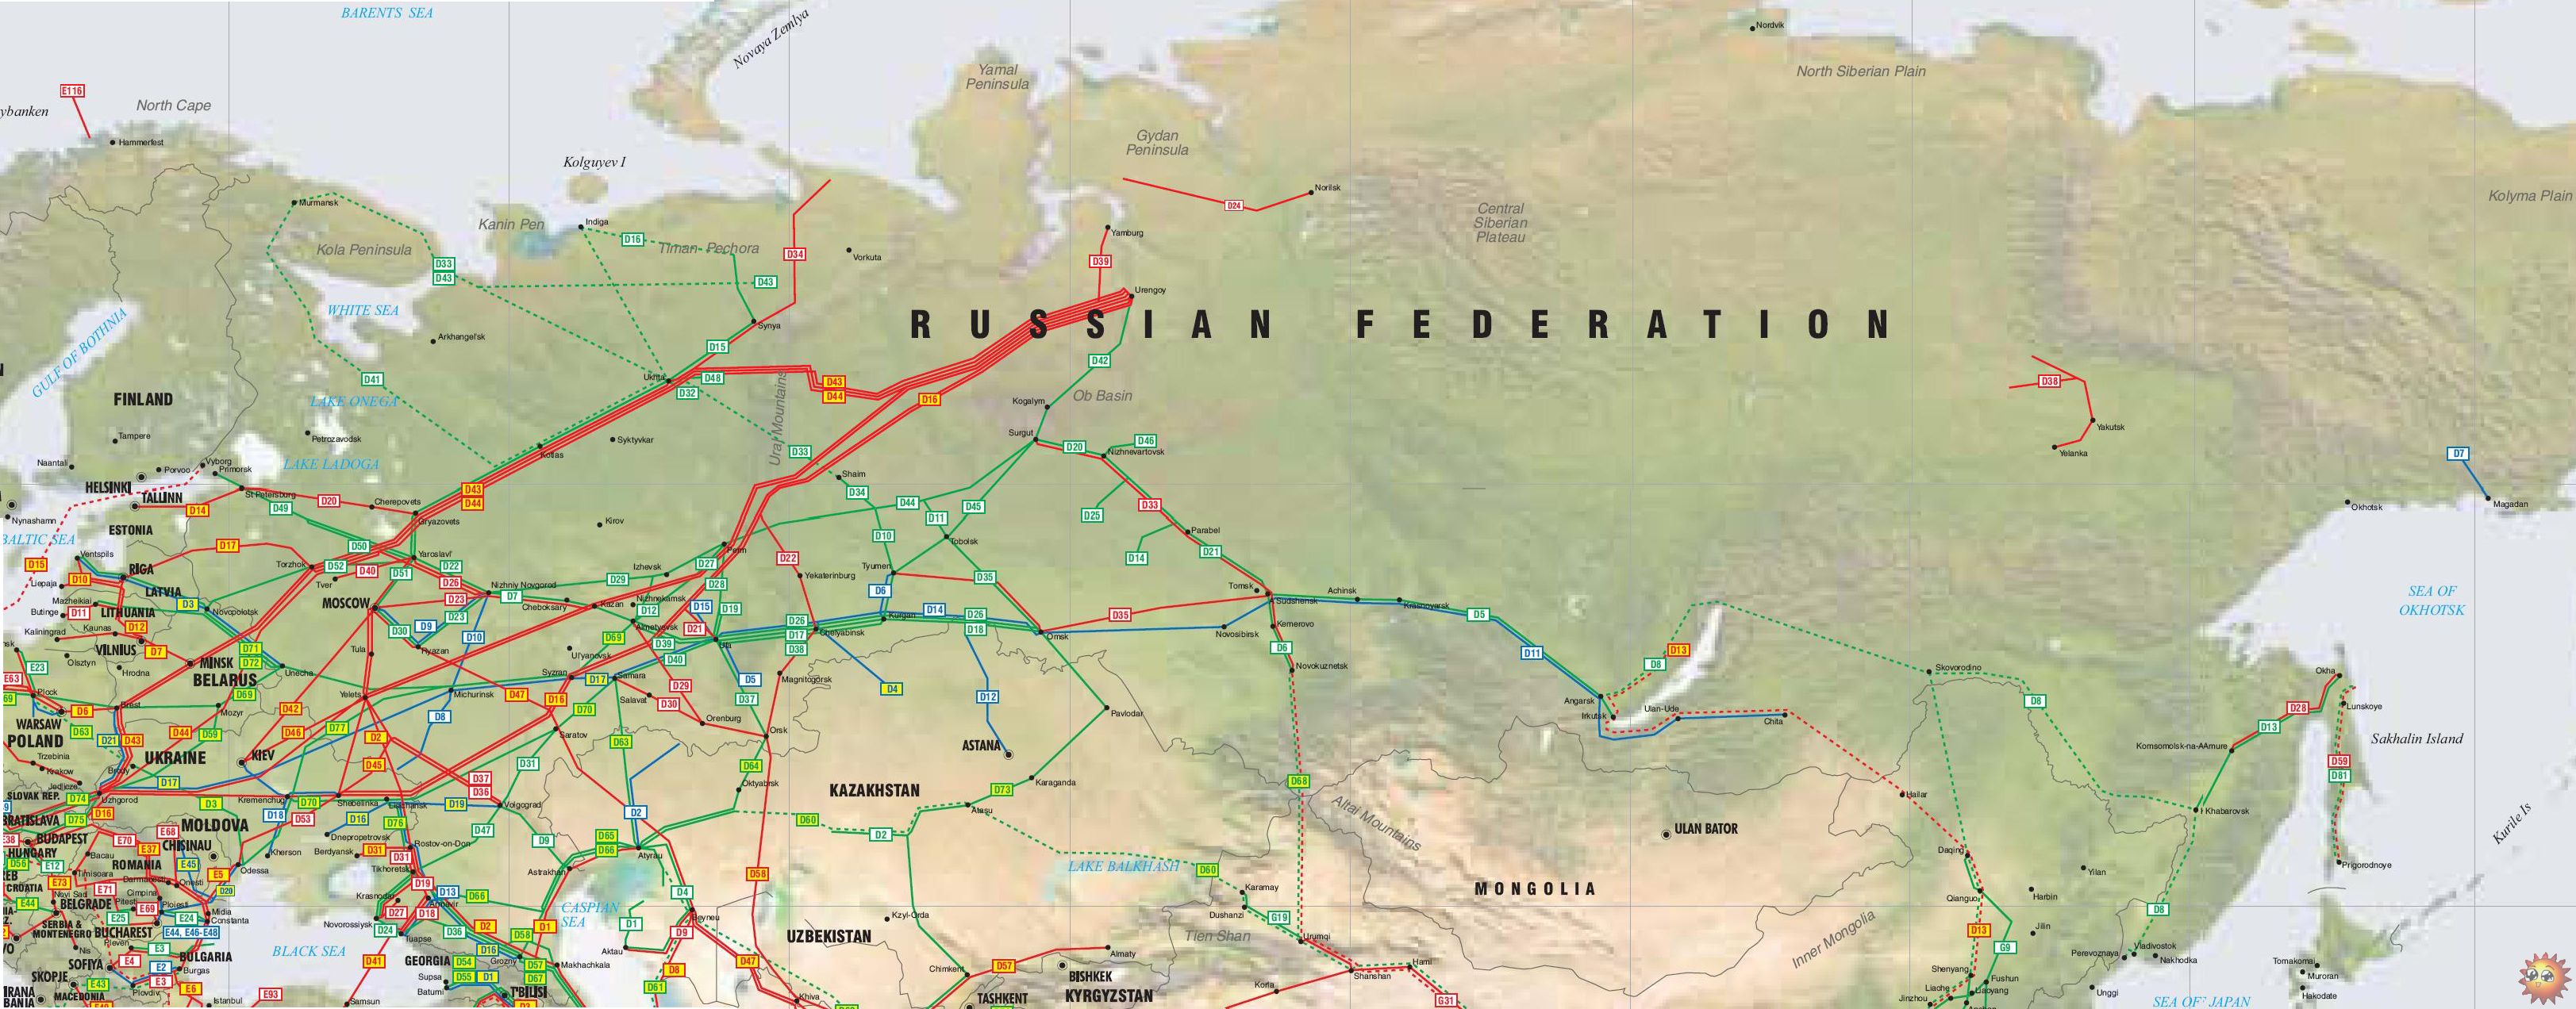 russia_ukraine_belarus_baltic_republics_pipelines_map.jpg